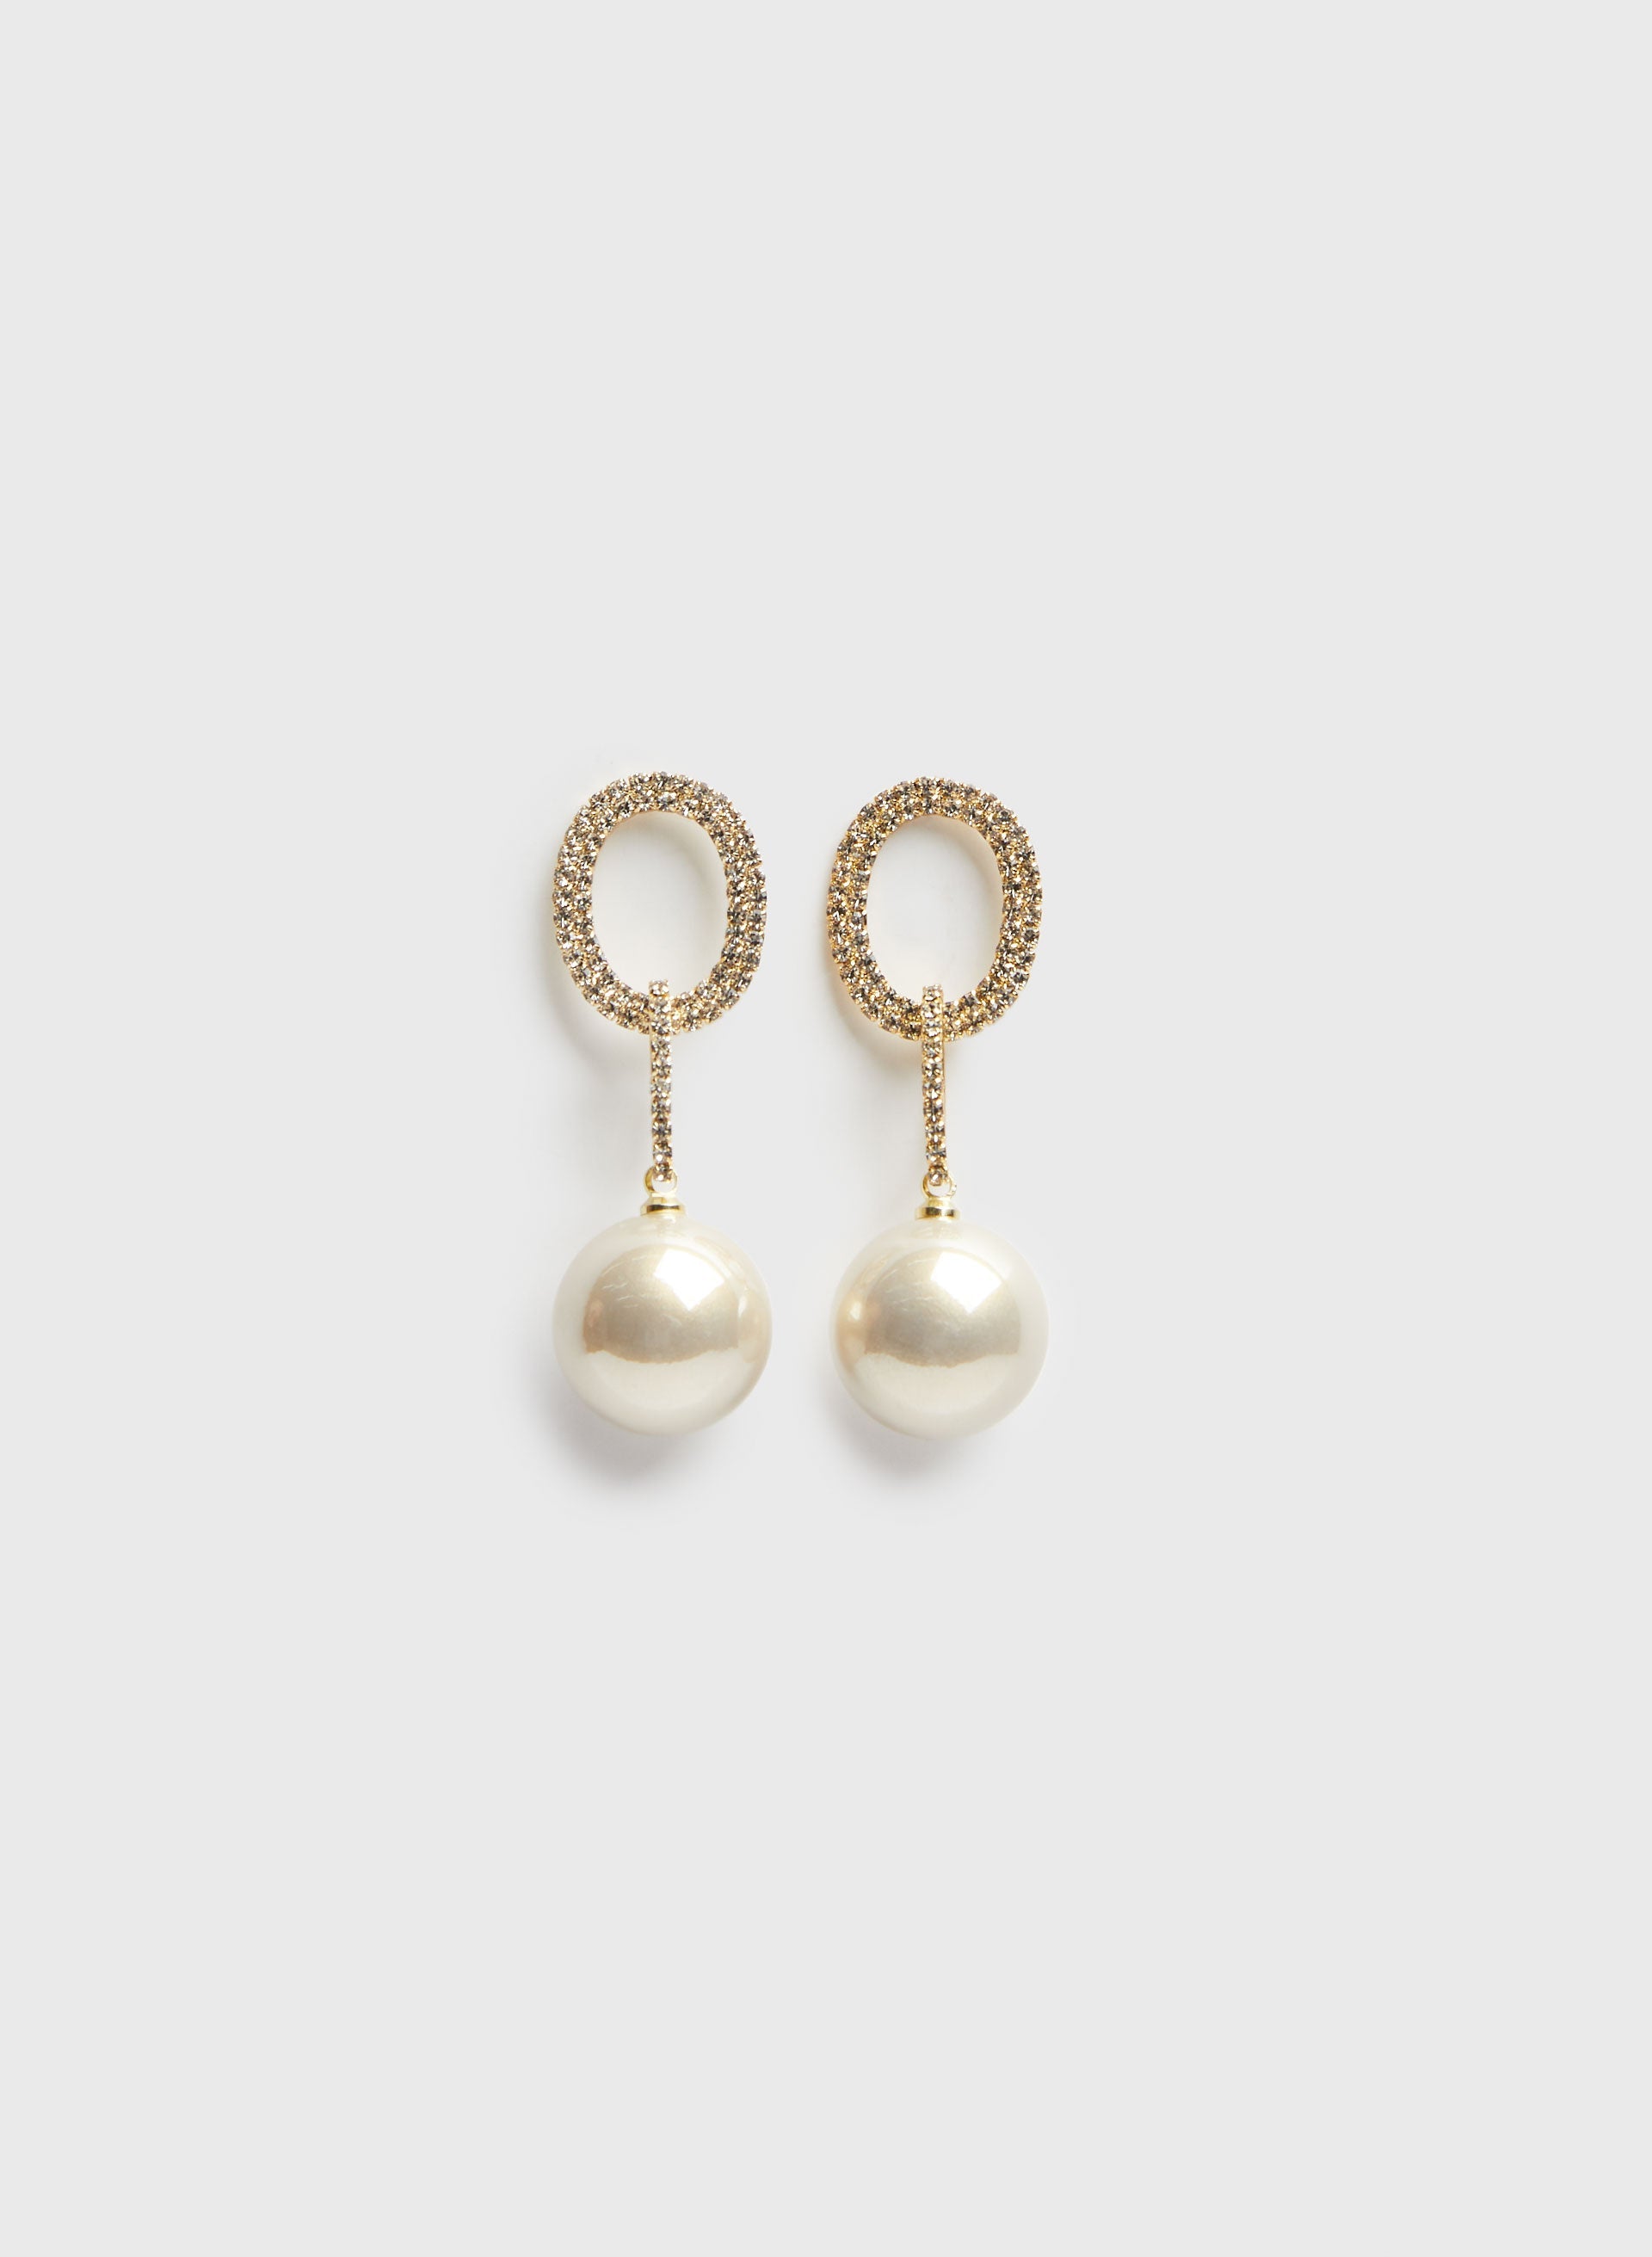 Double Ring Pearl Dangle Earrings